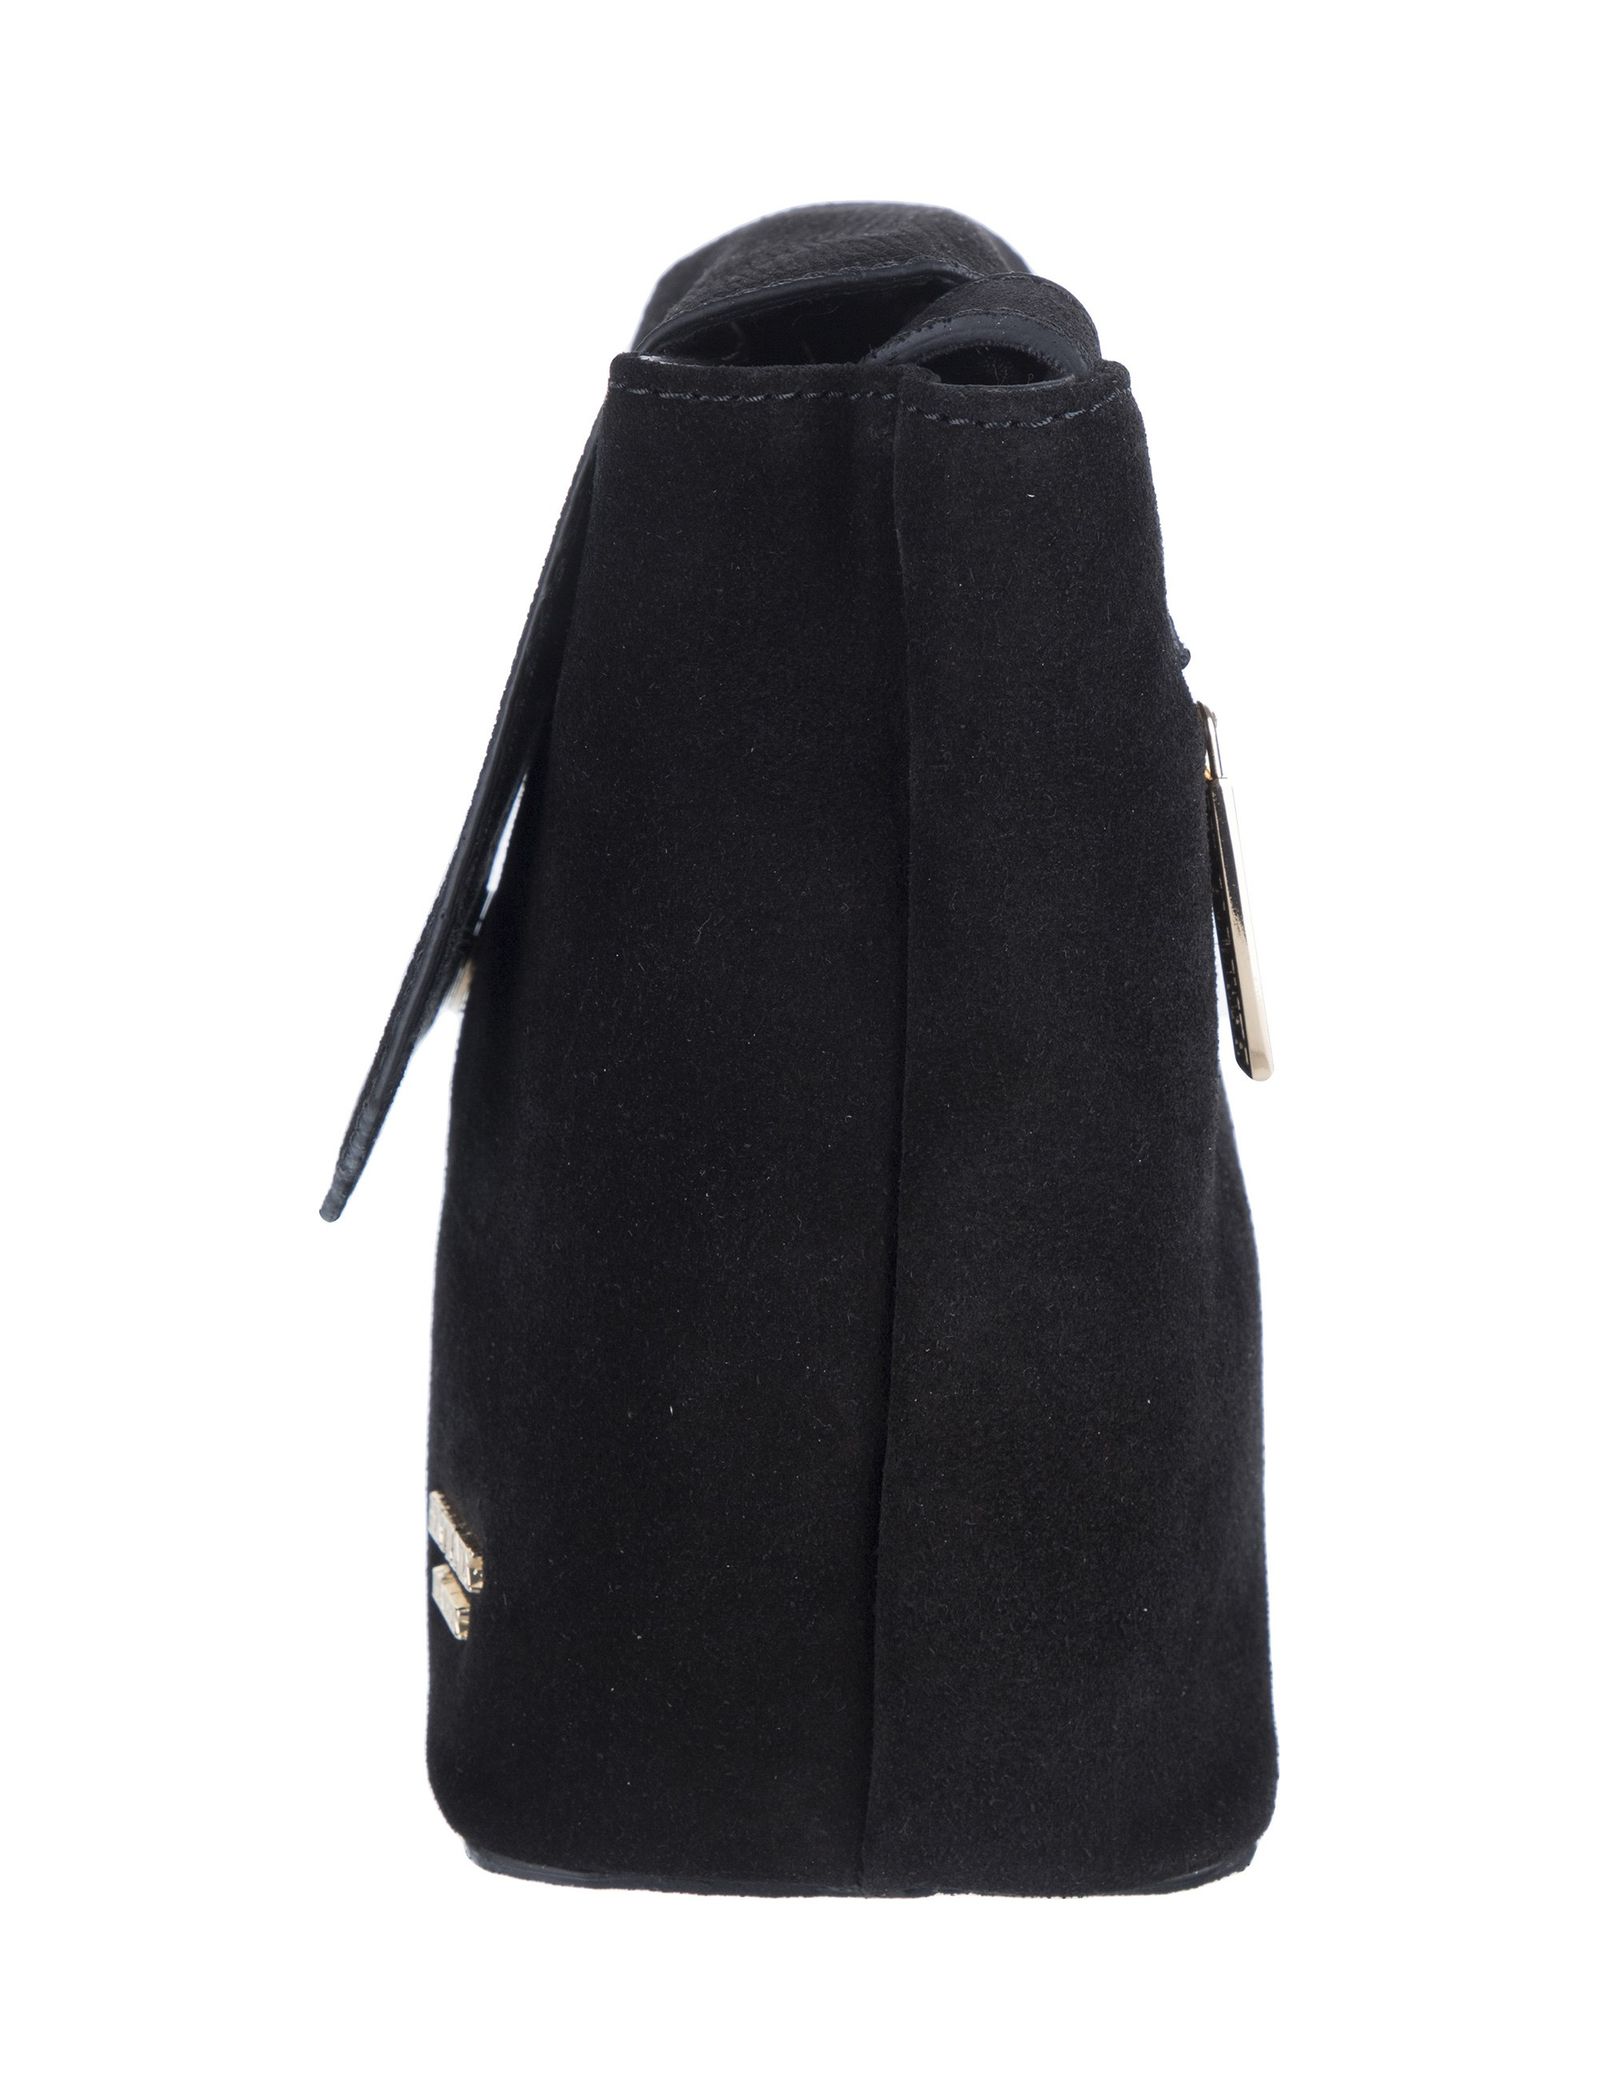 کیف دوشی چرم زنانه - برتونیکس تک سایز - مشکي - 6